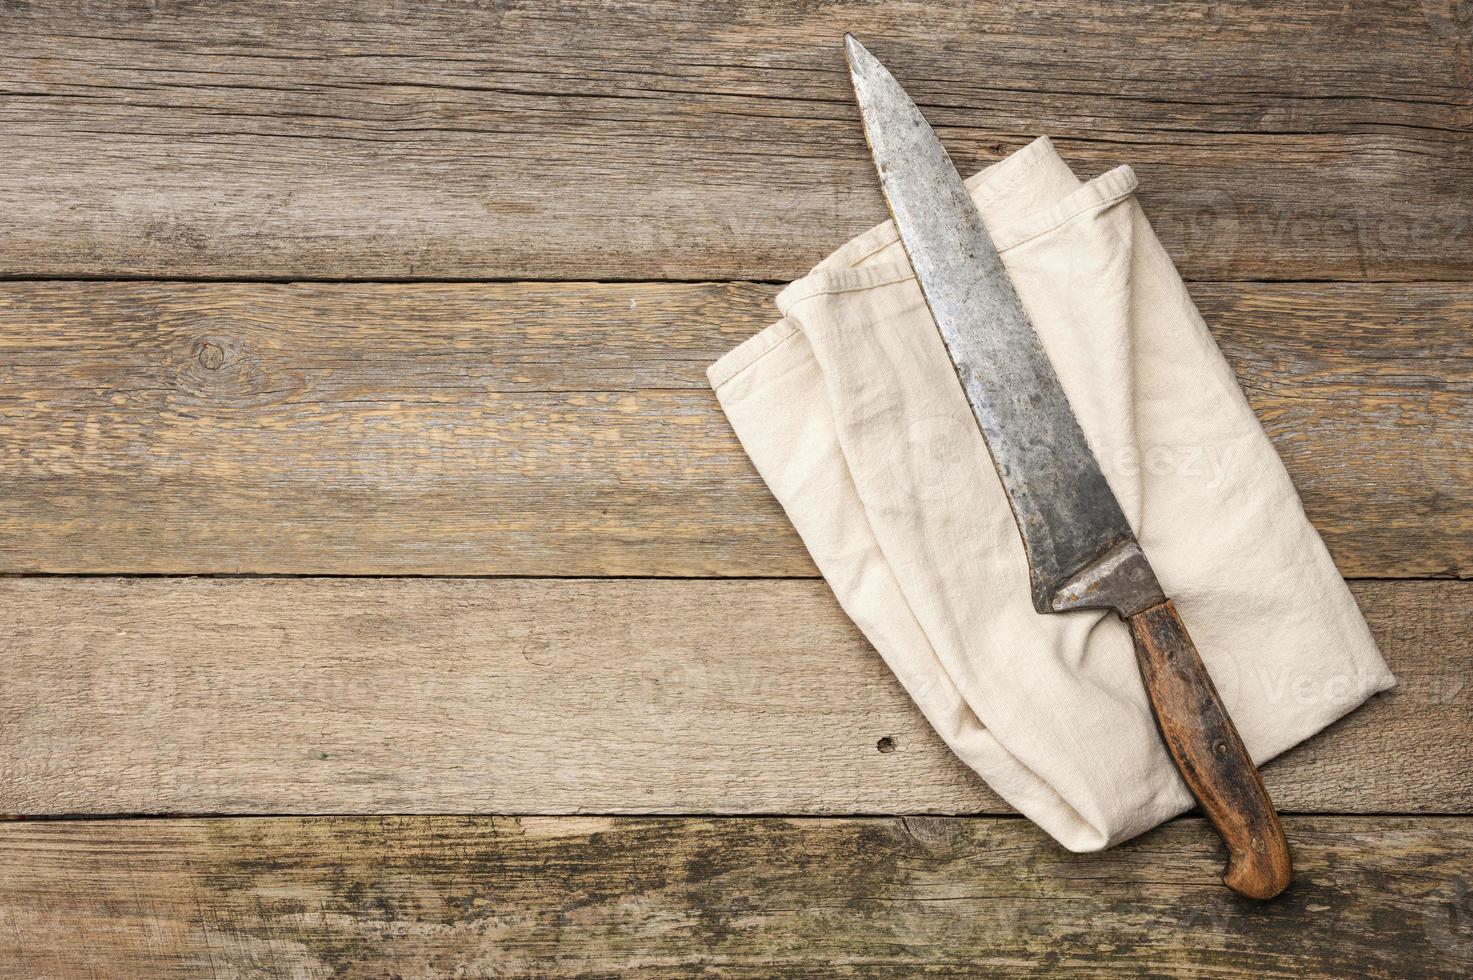 très vieux couteau et torchon de cuisine en lin gris sur une table faite de vieilles planches de bois photo